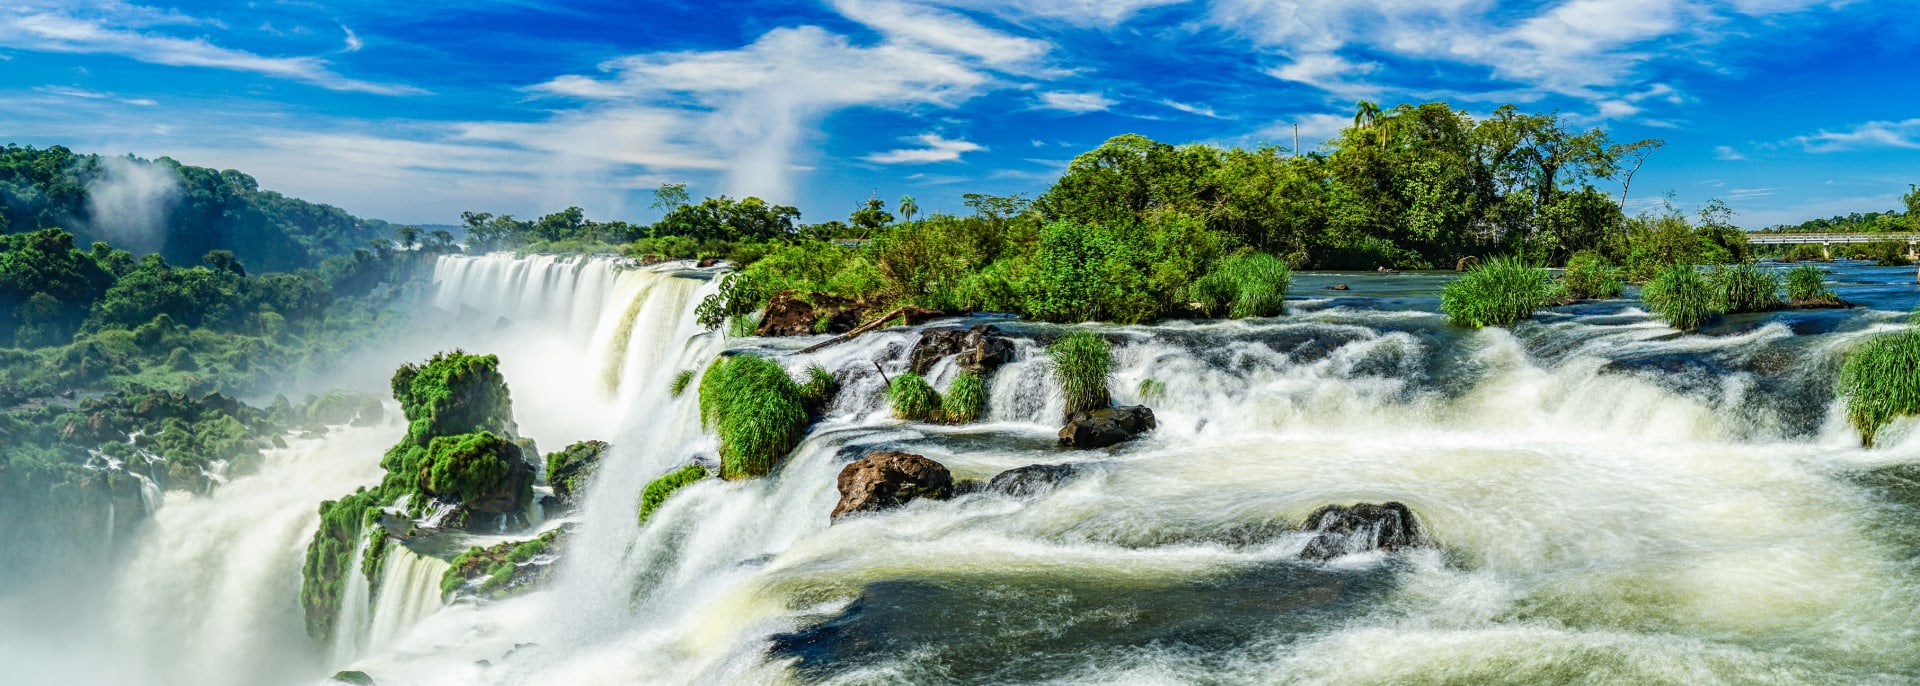 Iguazu, Brasilien